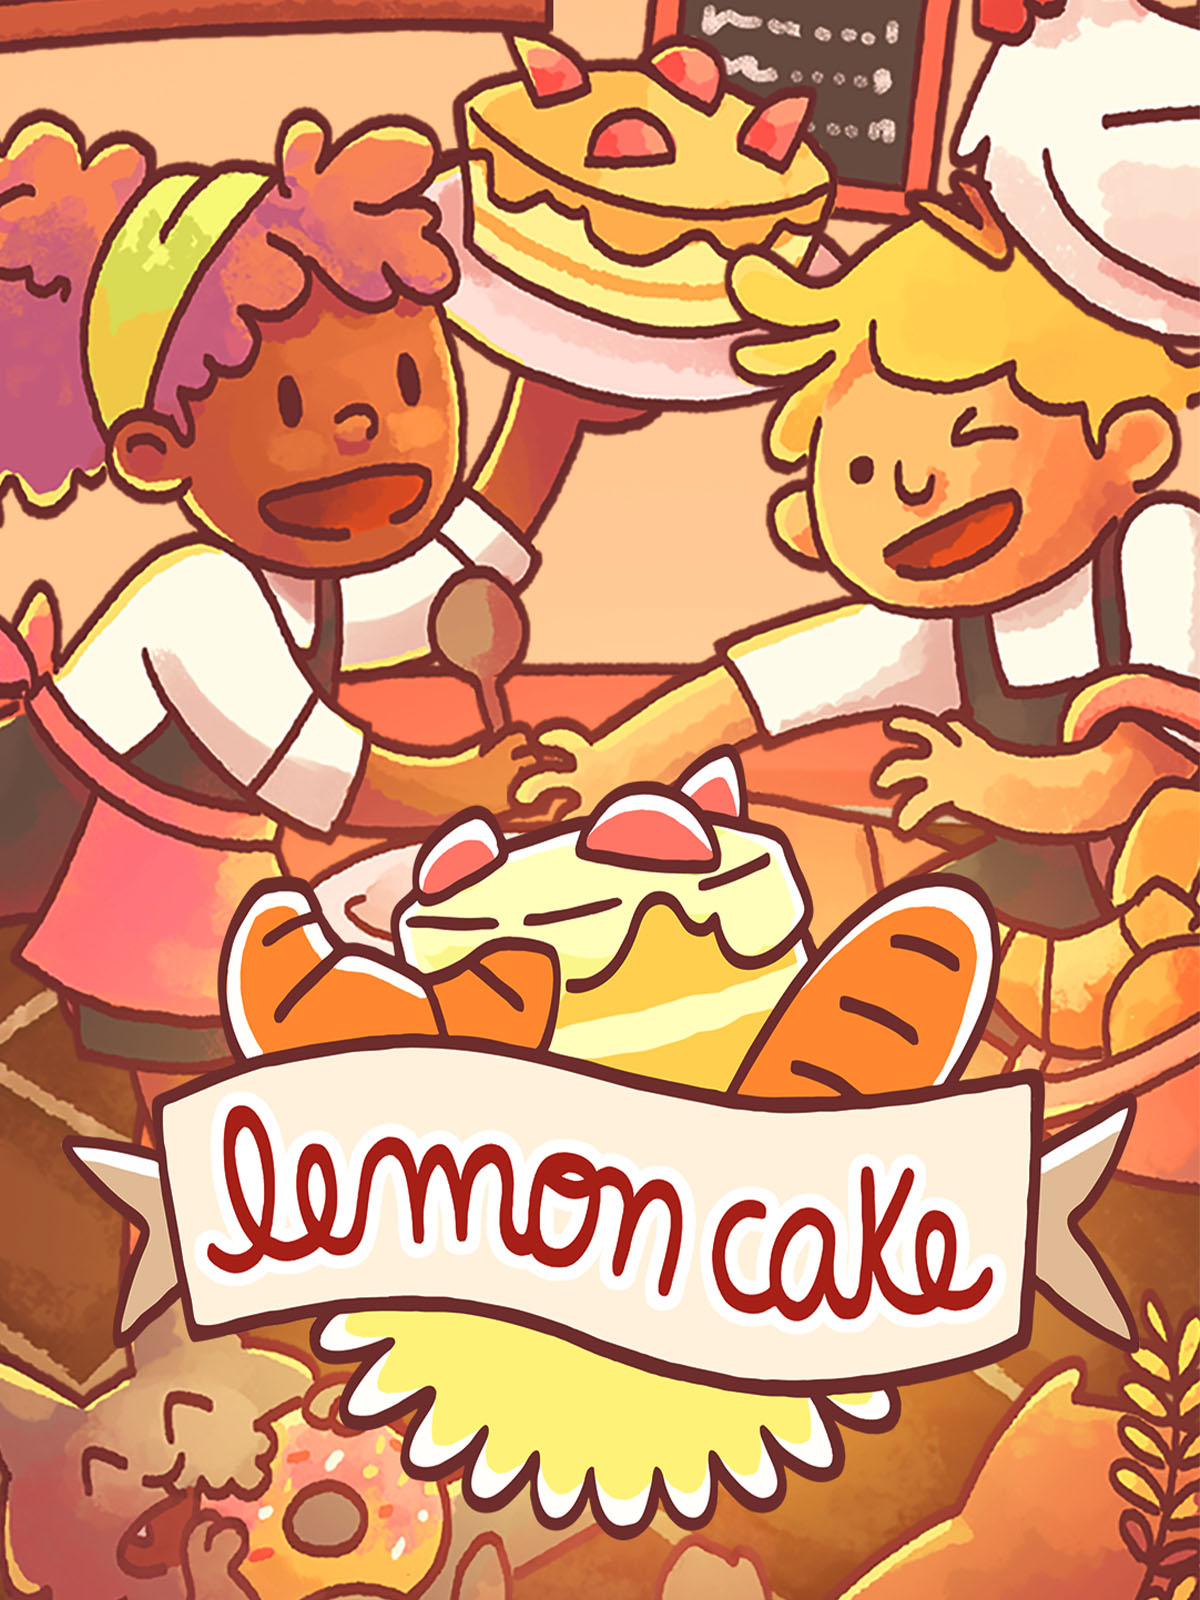 jaquette du jeu vidéo Lemon cake